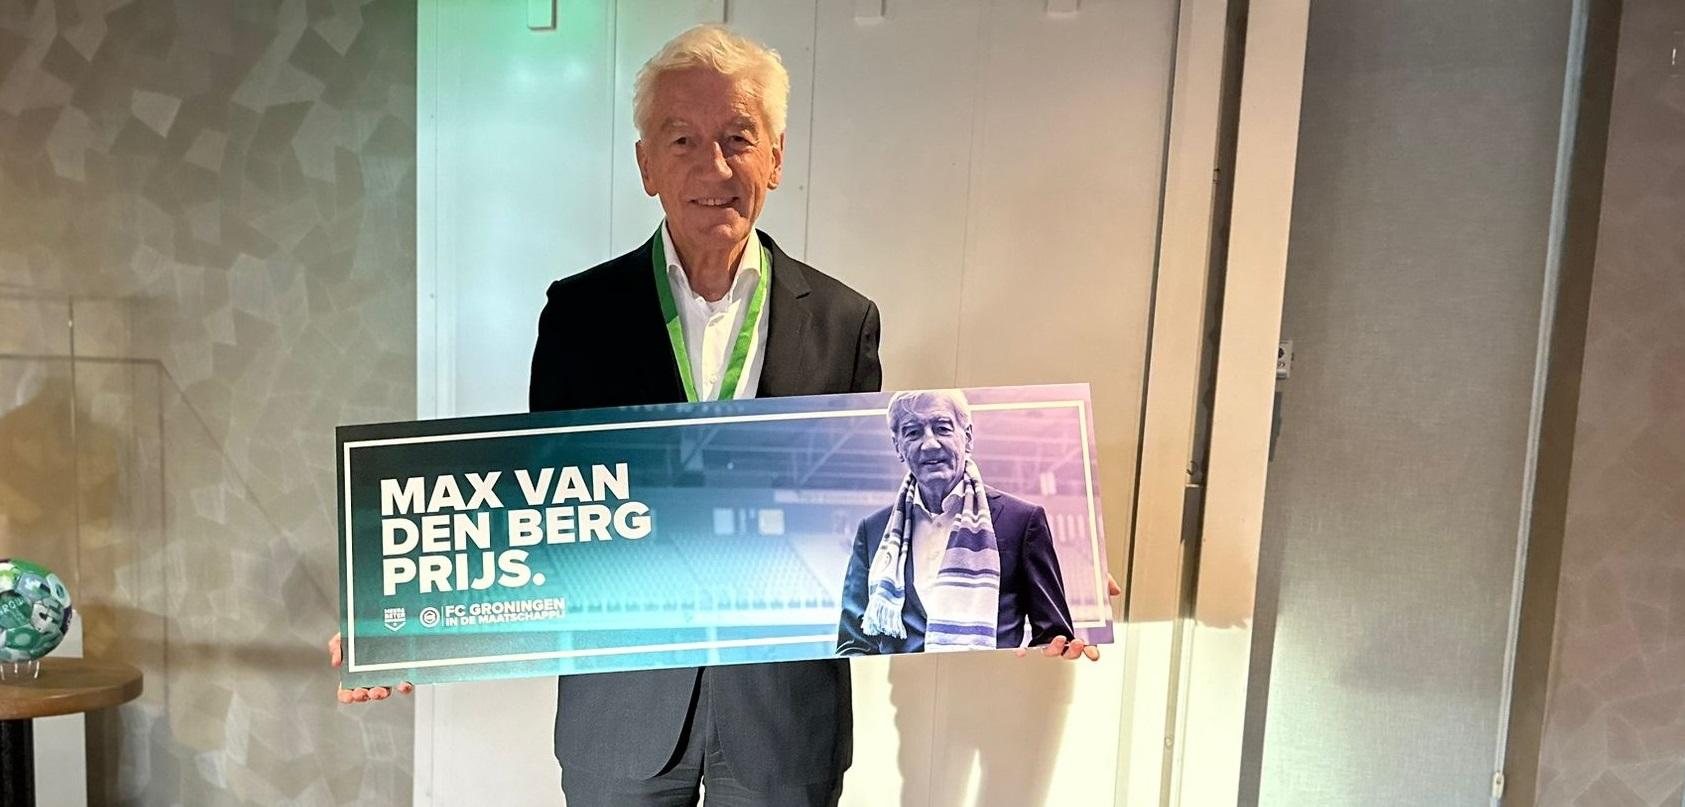 Max van der Berg prijs